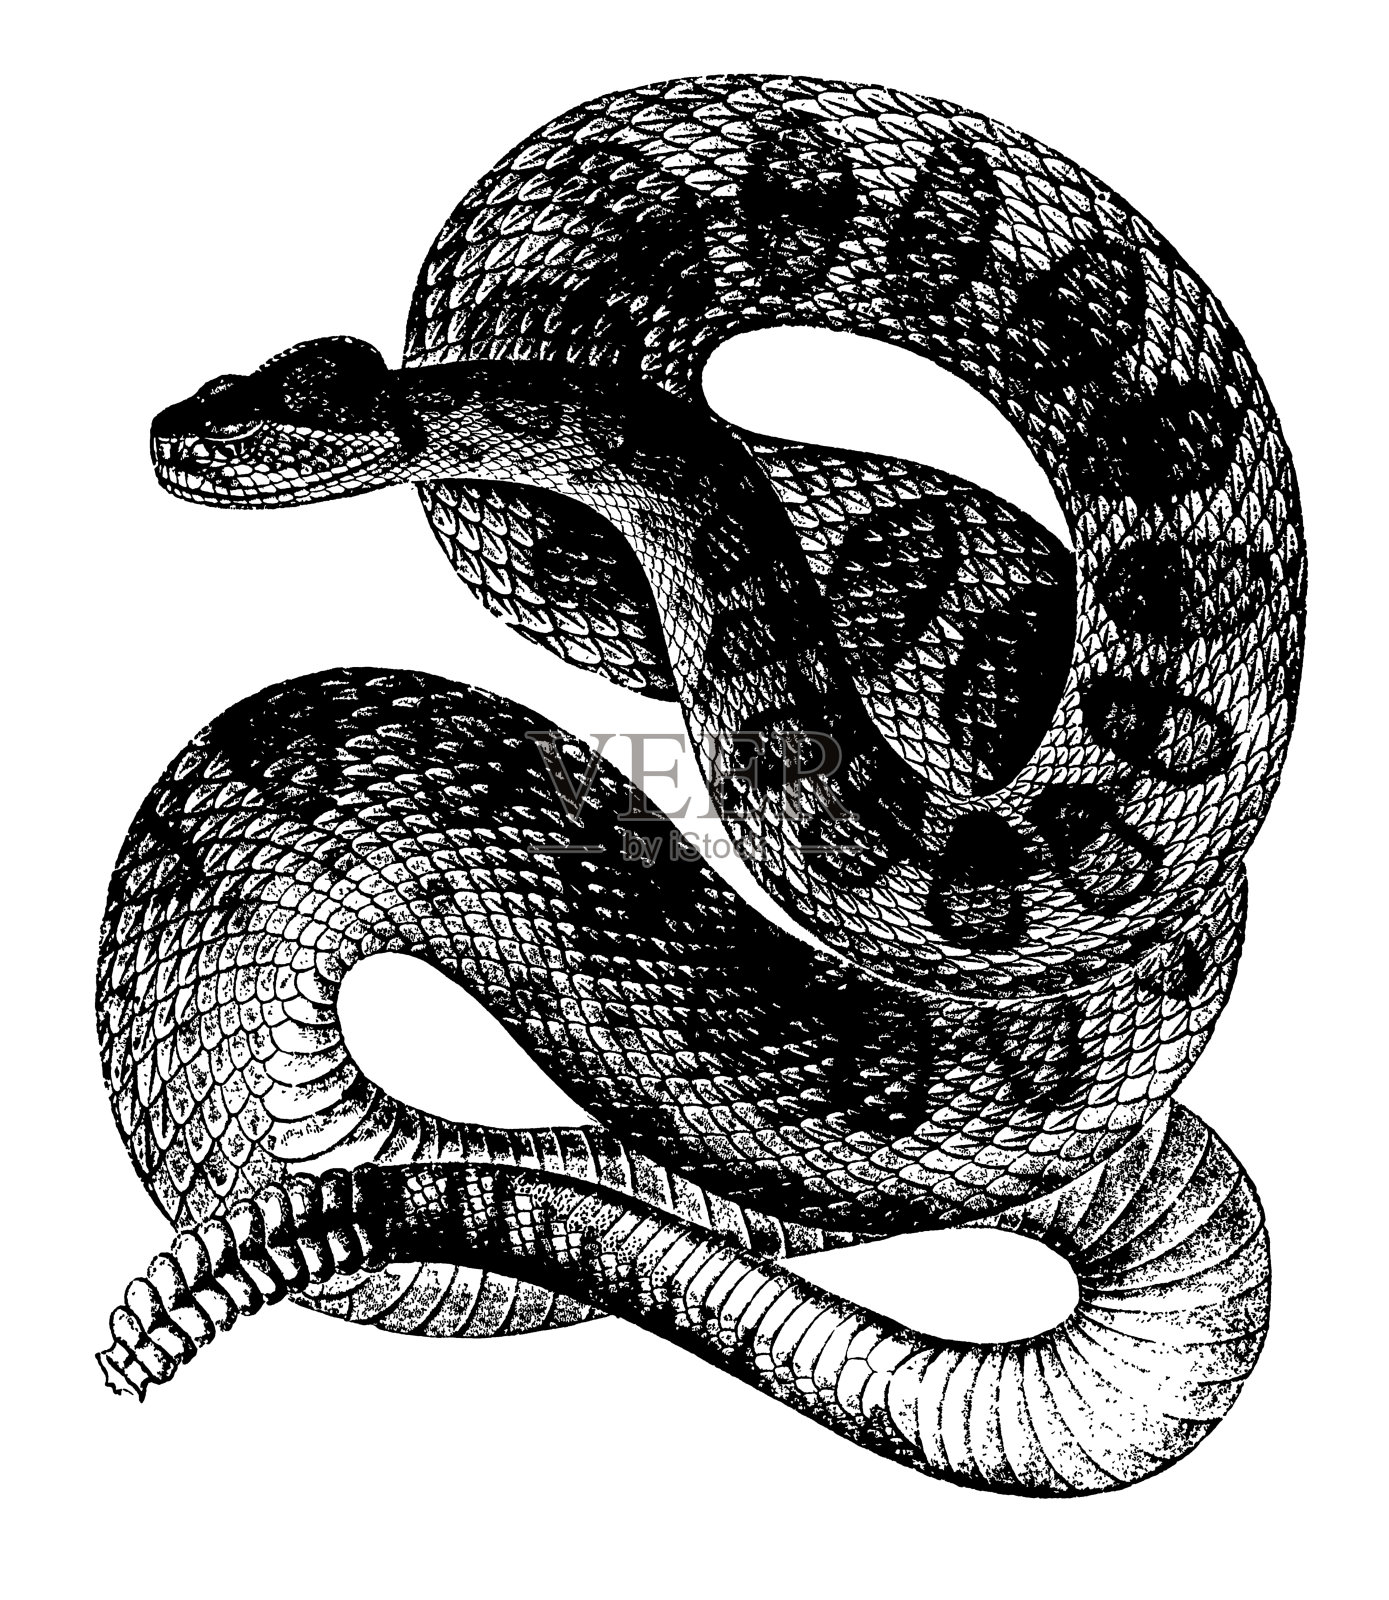 响尾蛇|古董动物插图插画图片素材